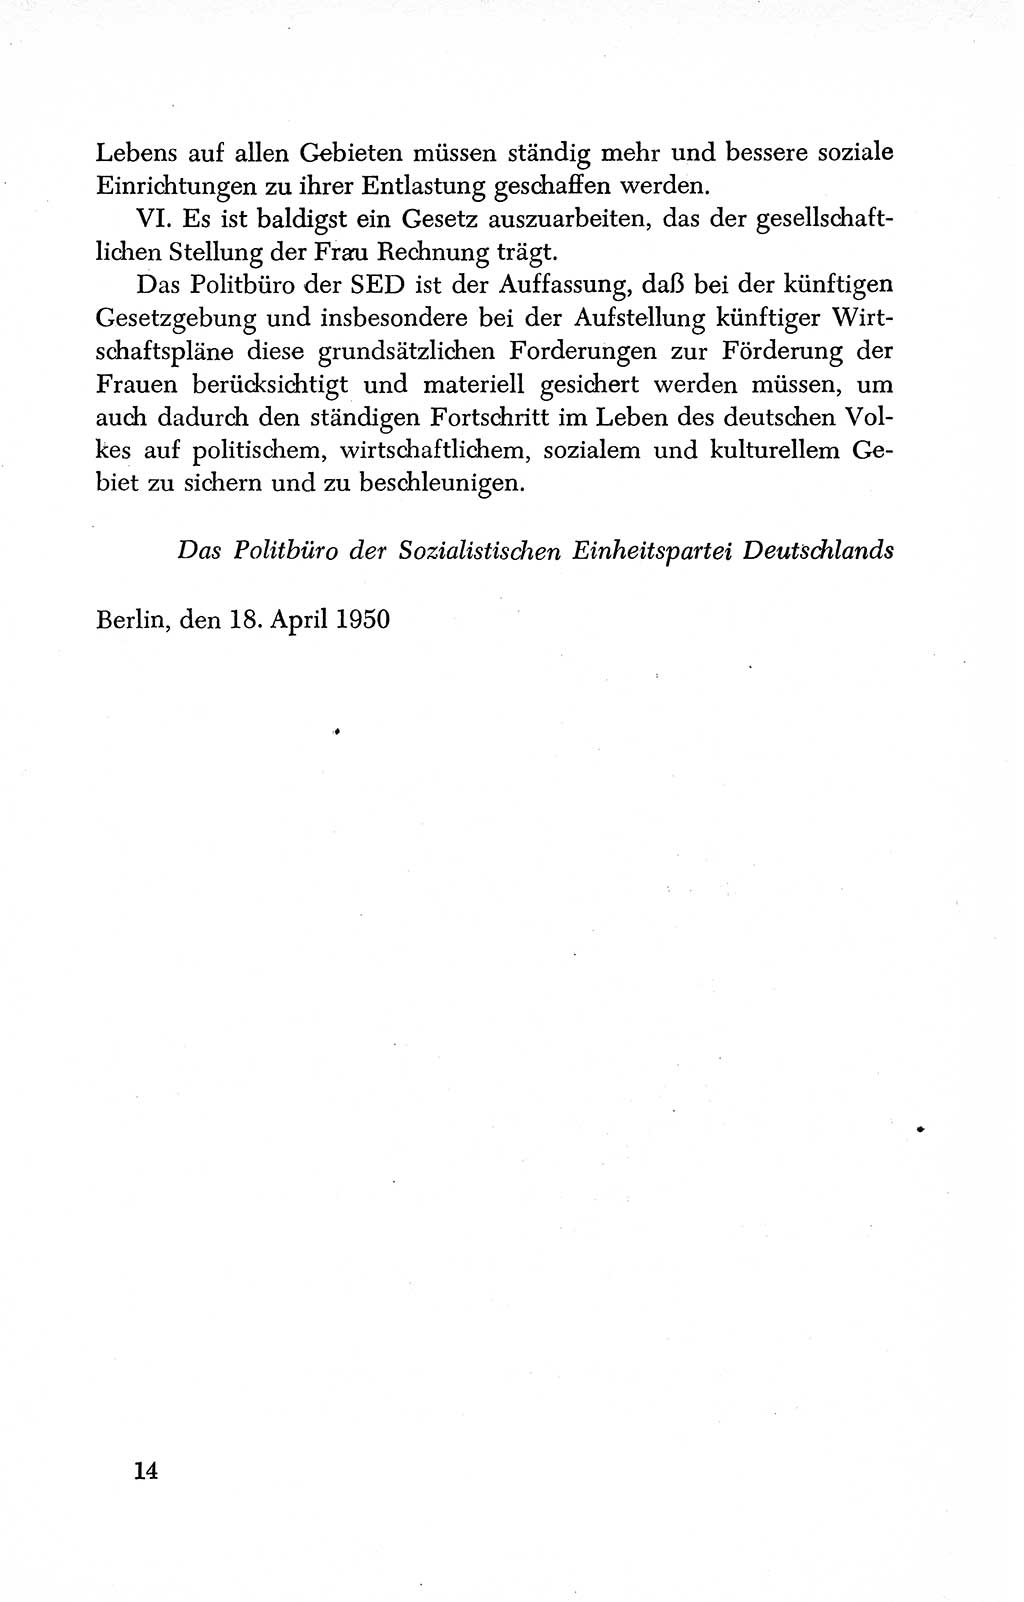 Dokumente der Sozialistischen Einheitspartei Deutschlands (SED) [Deutsche Demokratische Republik (DDR)] 1950-1952, Seite 14 (Dok. SED DDR 1950-1952, S. 14)